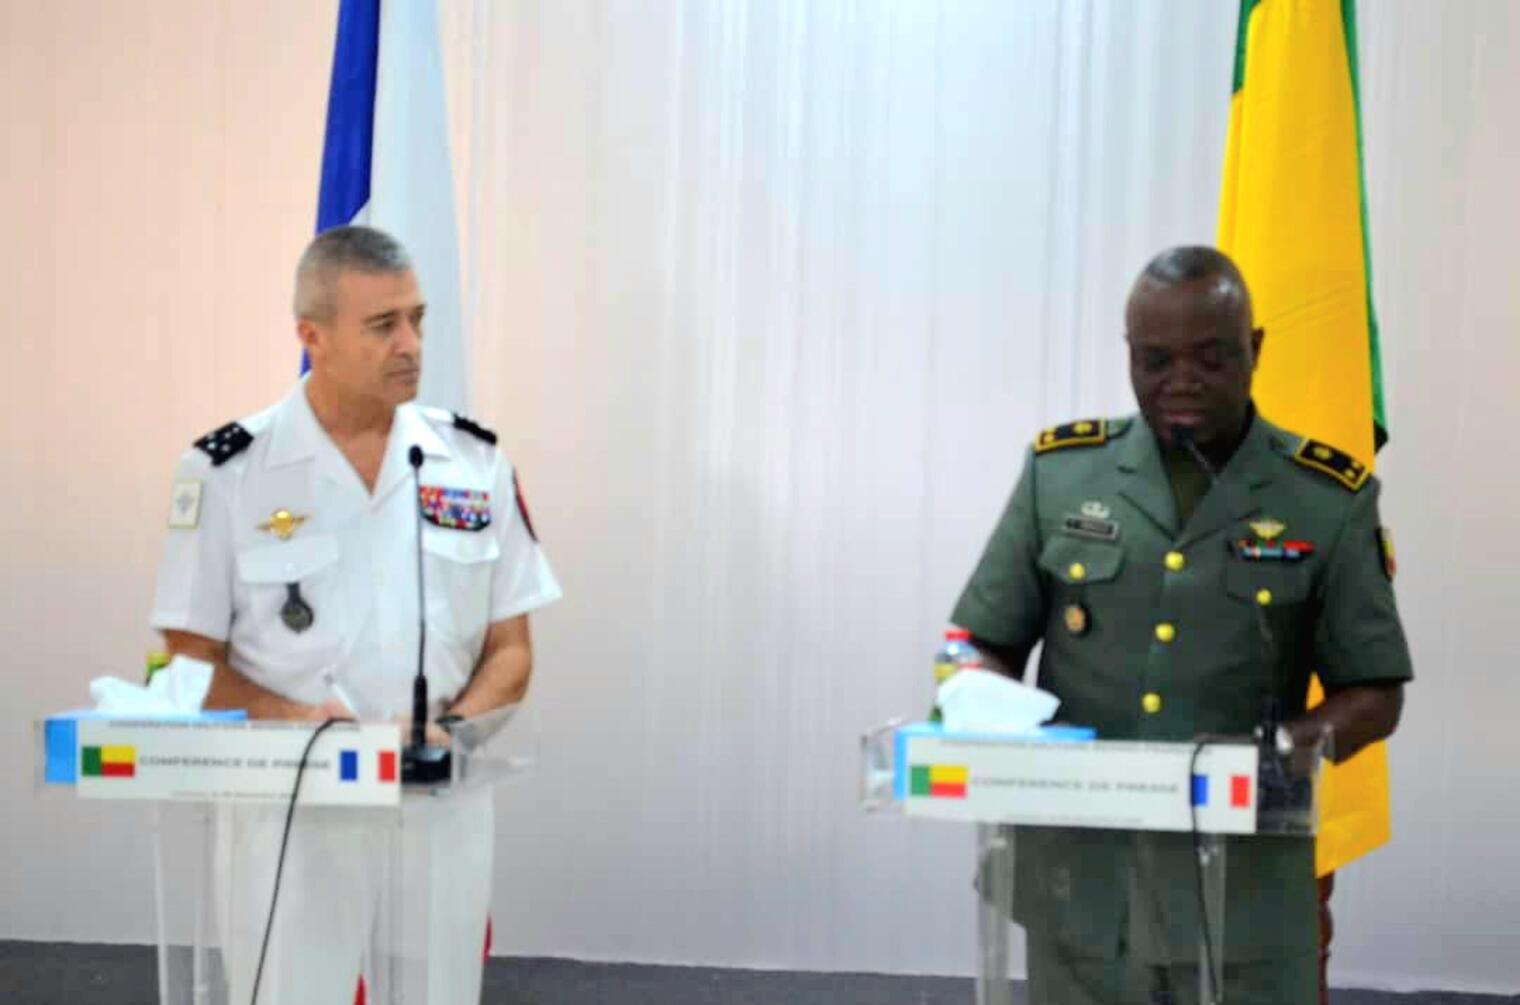 France-Bénin : Le Chef d’état-major Thierry Burkhard affirme que le Bénin n’héberge aucune base militaire française